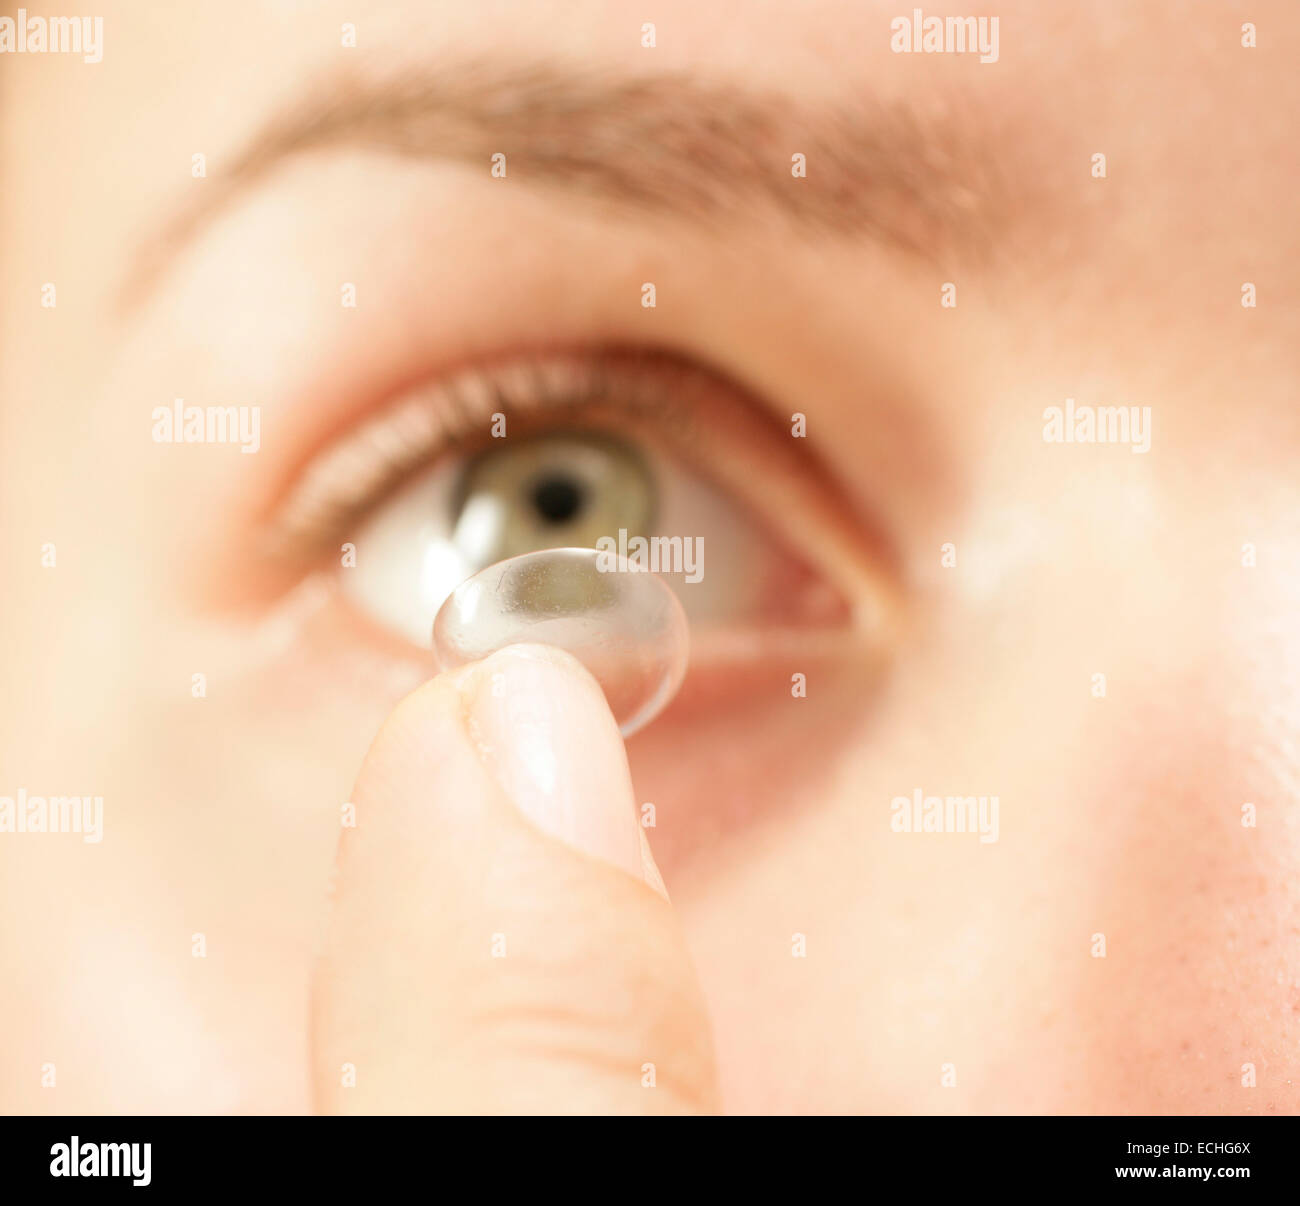 Un gros plan tout droit tiré d'une femme mettant en une lentille de contact dans l'œil Banque D'Images